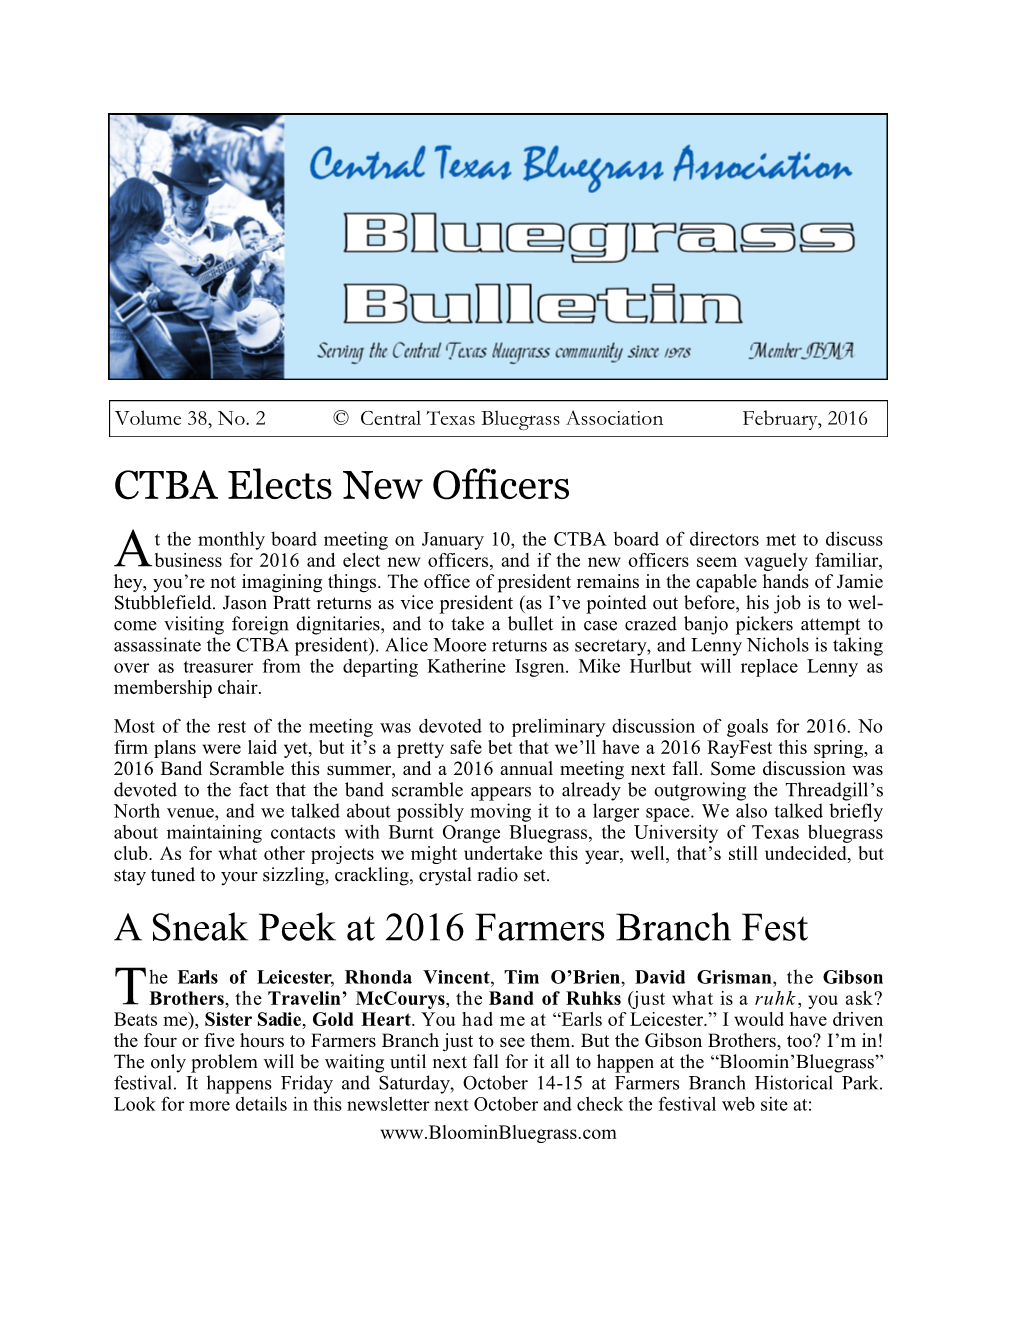 CTBA Elects New Officers a Sneak Peek at 2016 Farmers Branch Fest